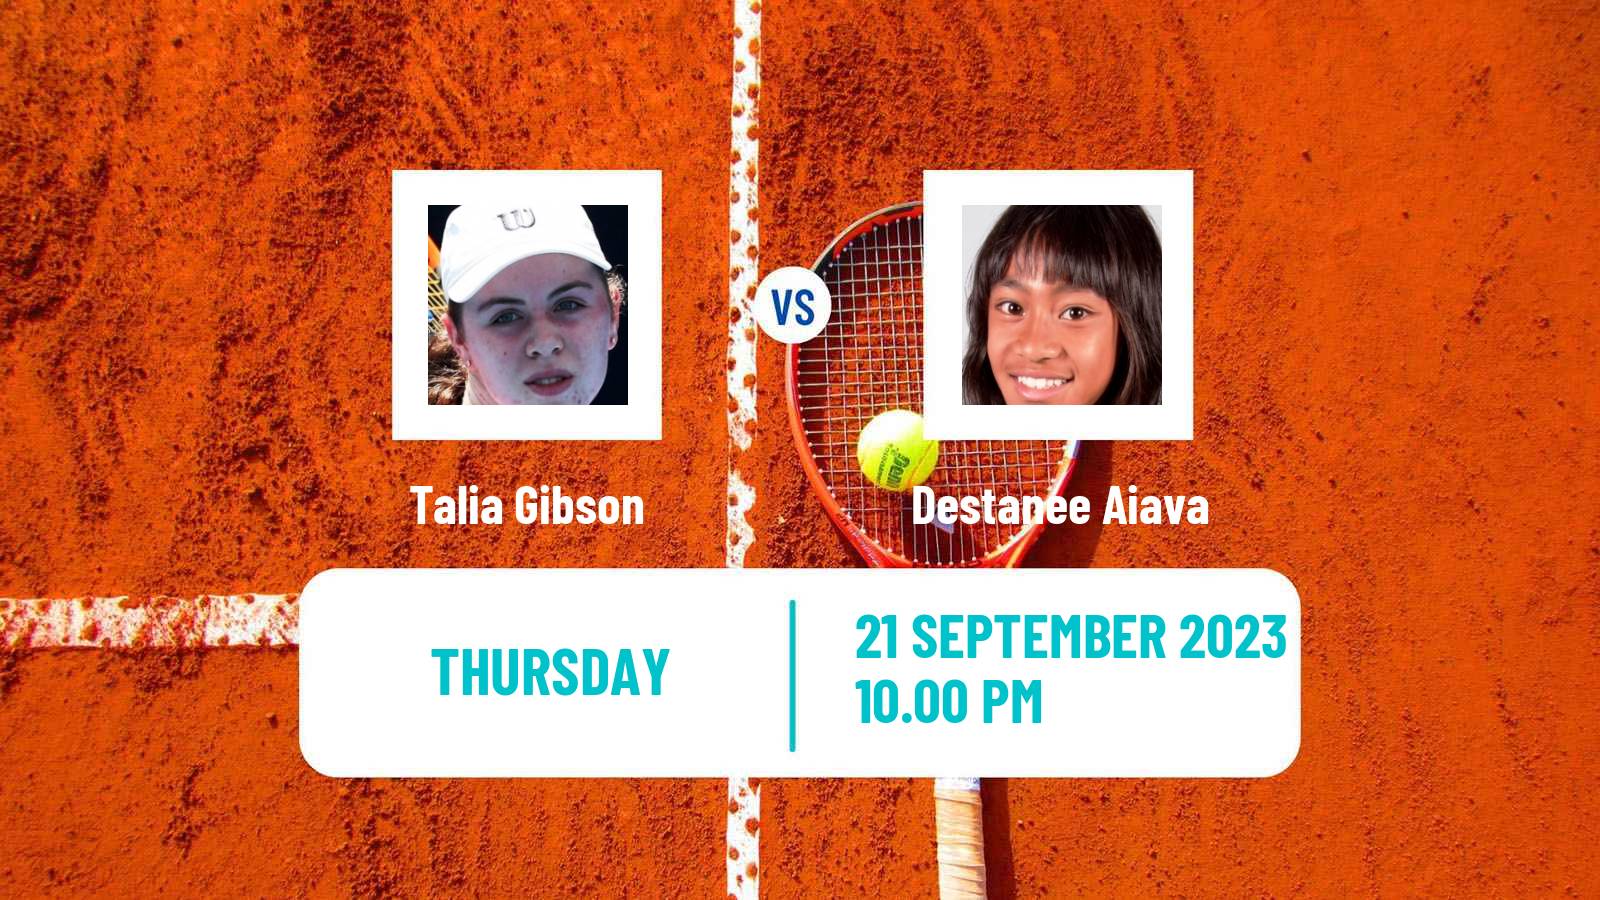 Tennis ITF W25 Perth 2 Women Talia Gibson - Destanee Aiava